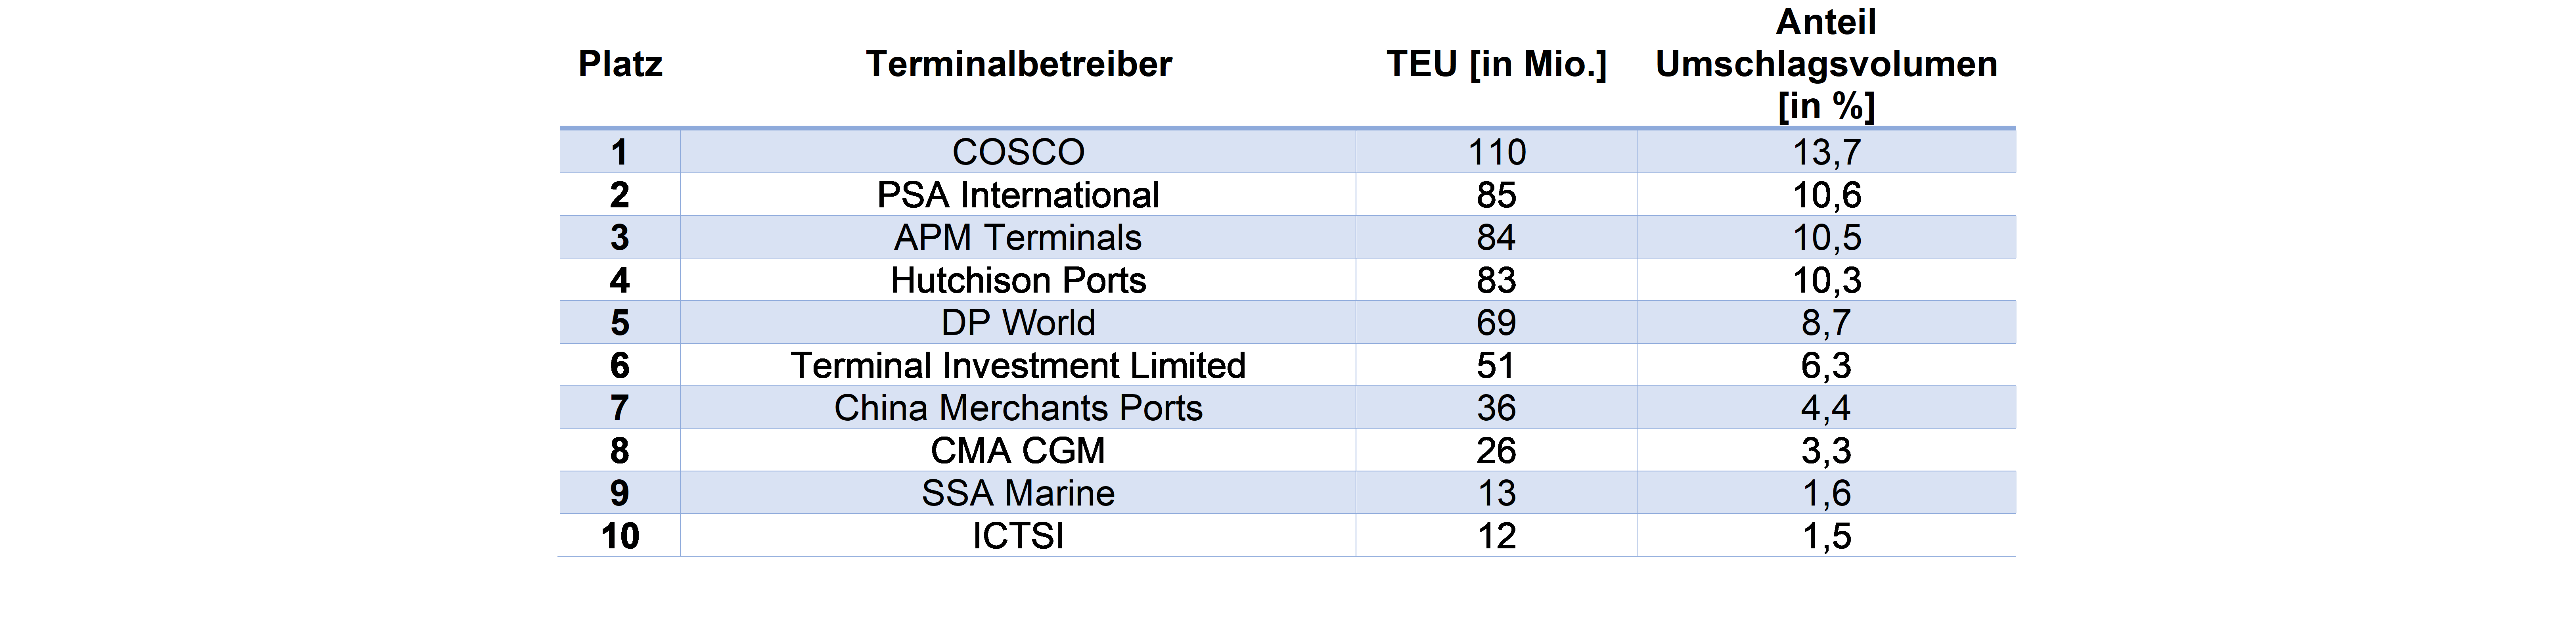 Top 10 Terminalbetreiber.png